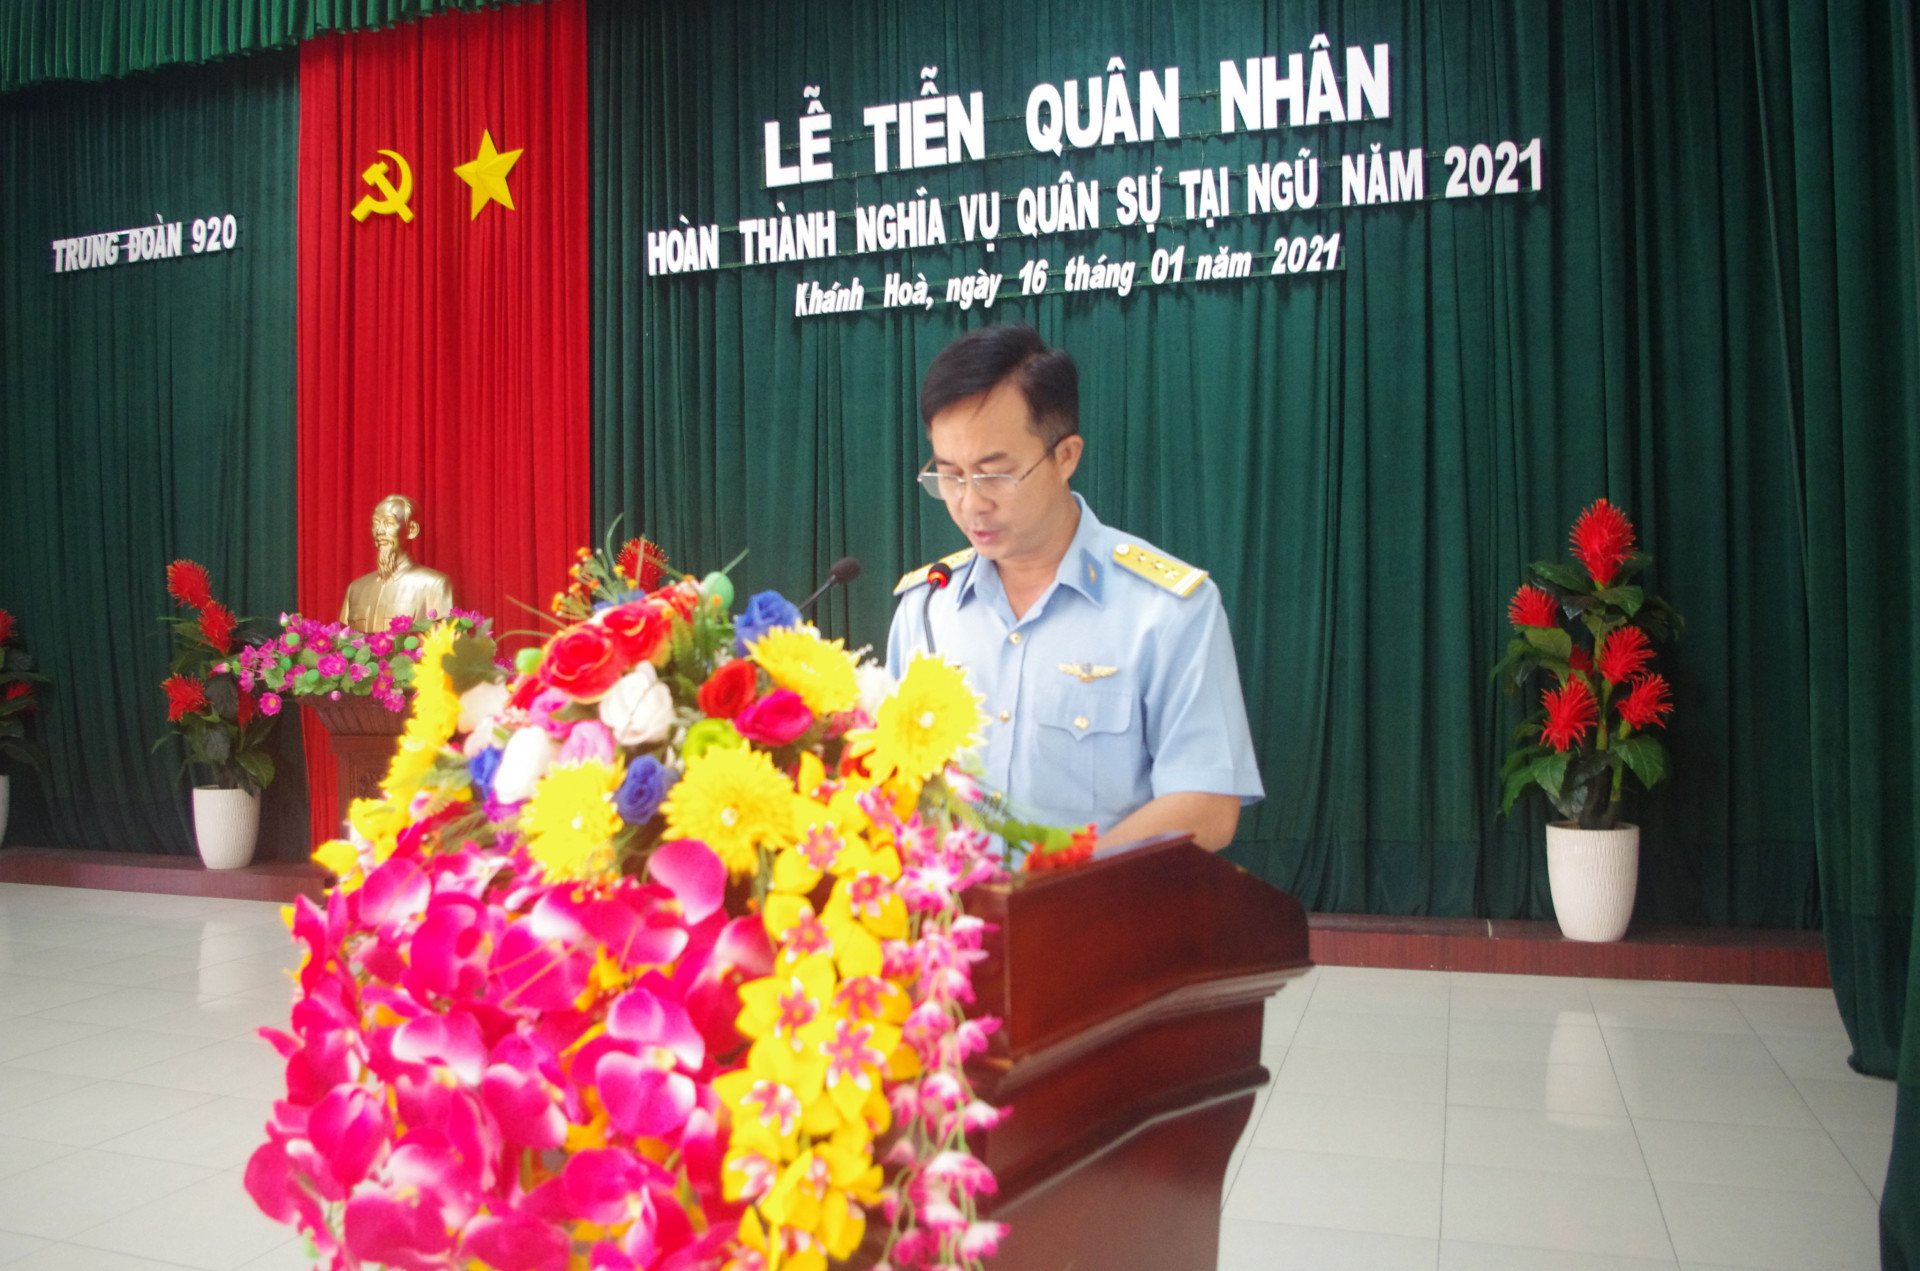 Thượng tá Nguyễn Hồng Thắng, Chính uỷ Trung đoàn 920 phát biểu tai buổi lễ